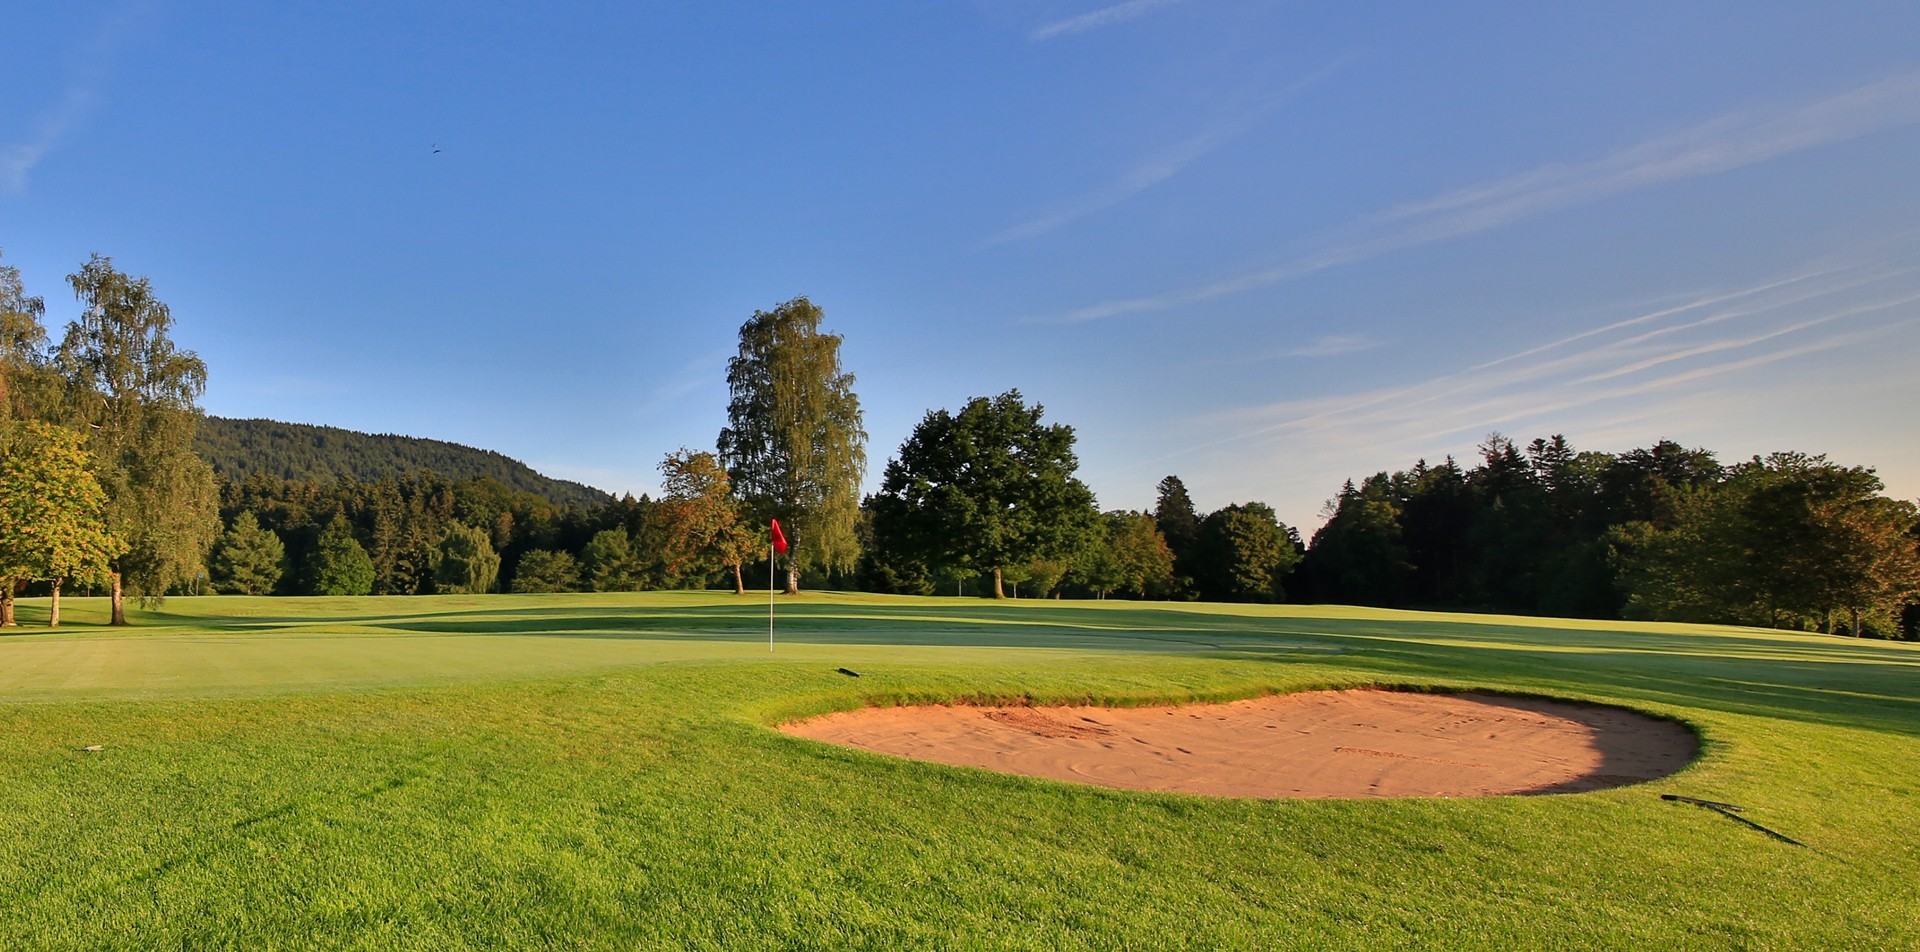 Abbildung eines Golfplatzes am Tegernsee